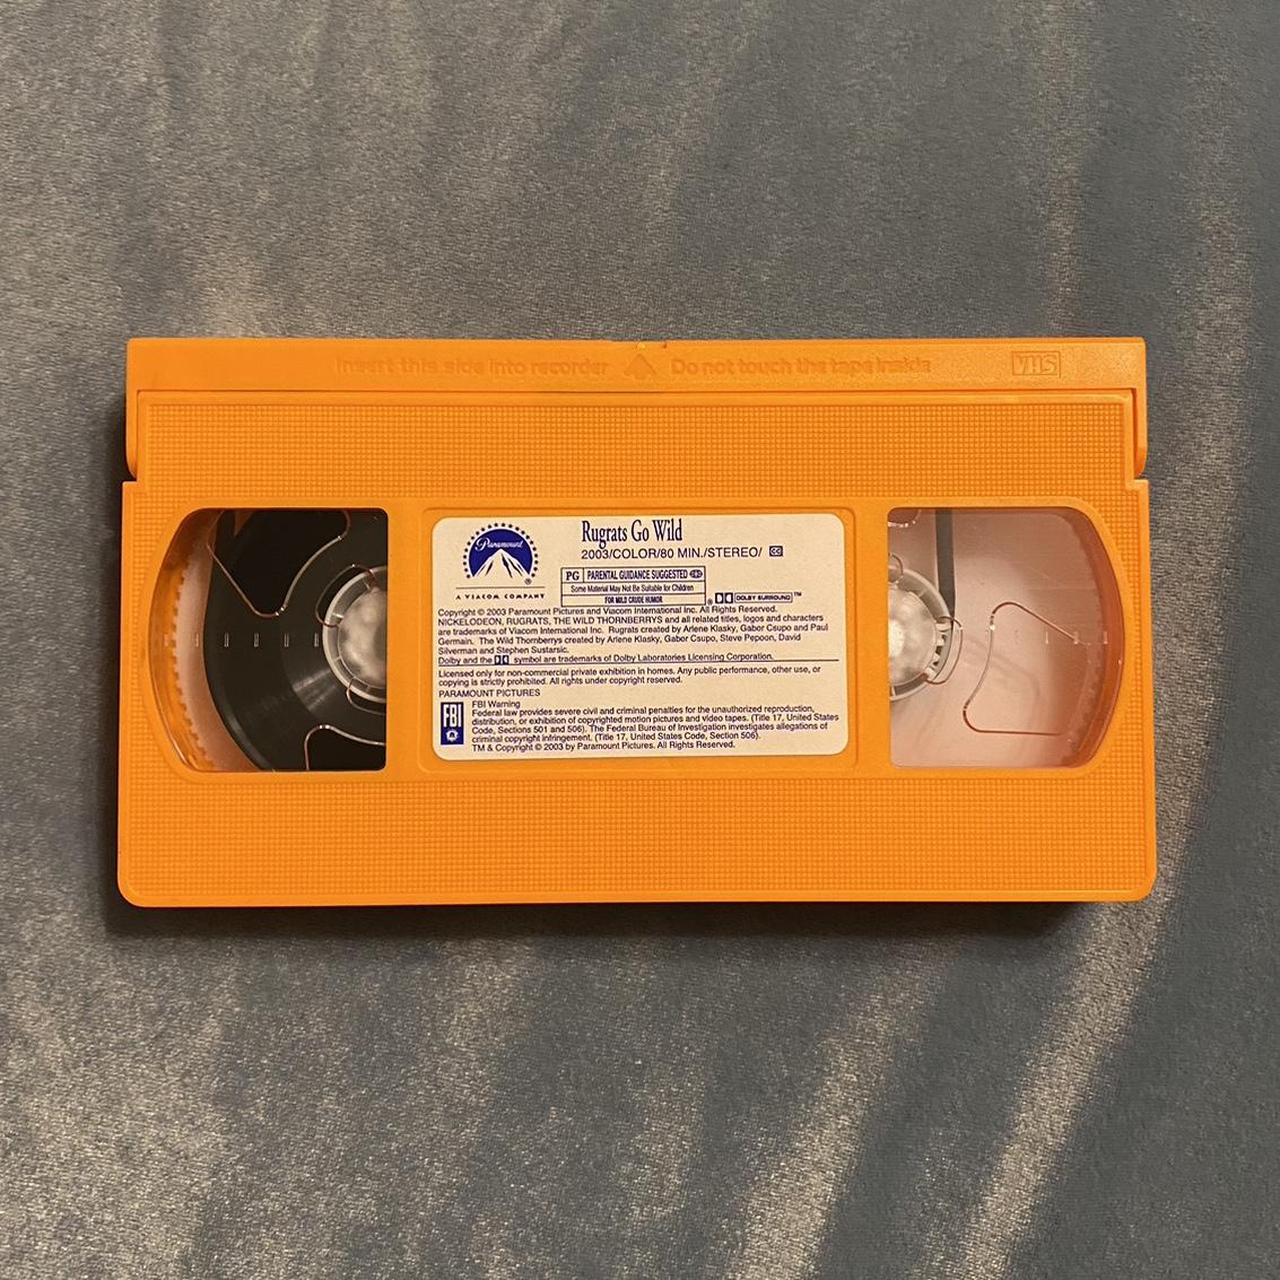 Nickelodeon “Rugrats Go Wild” movie on orange VHS